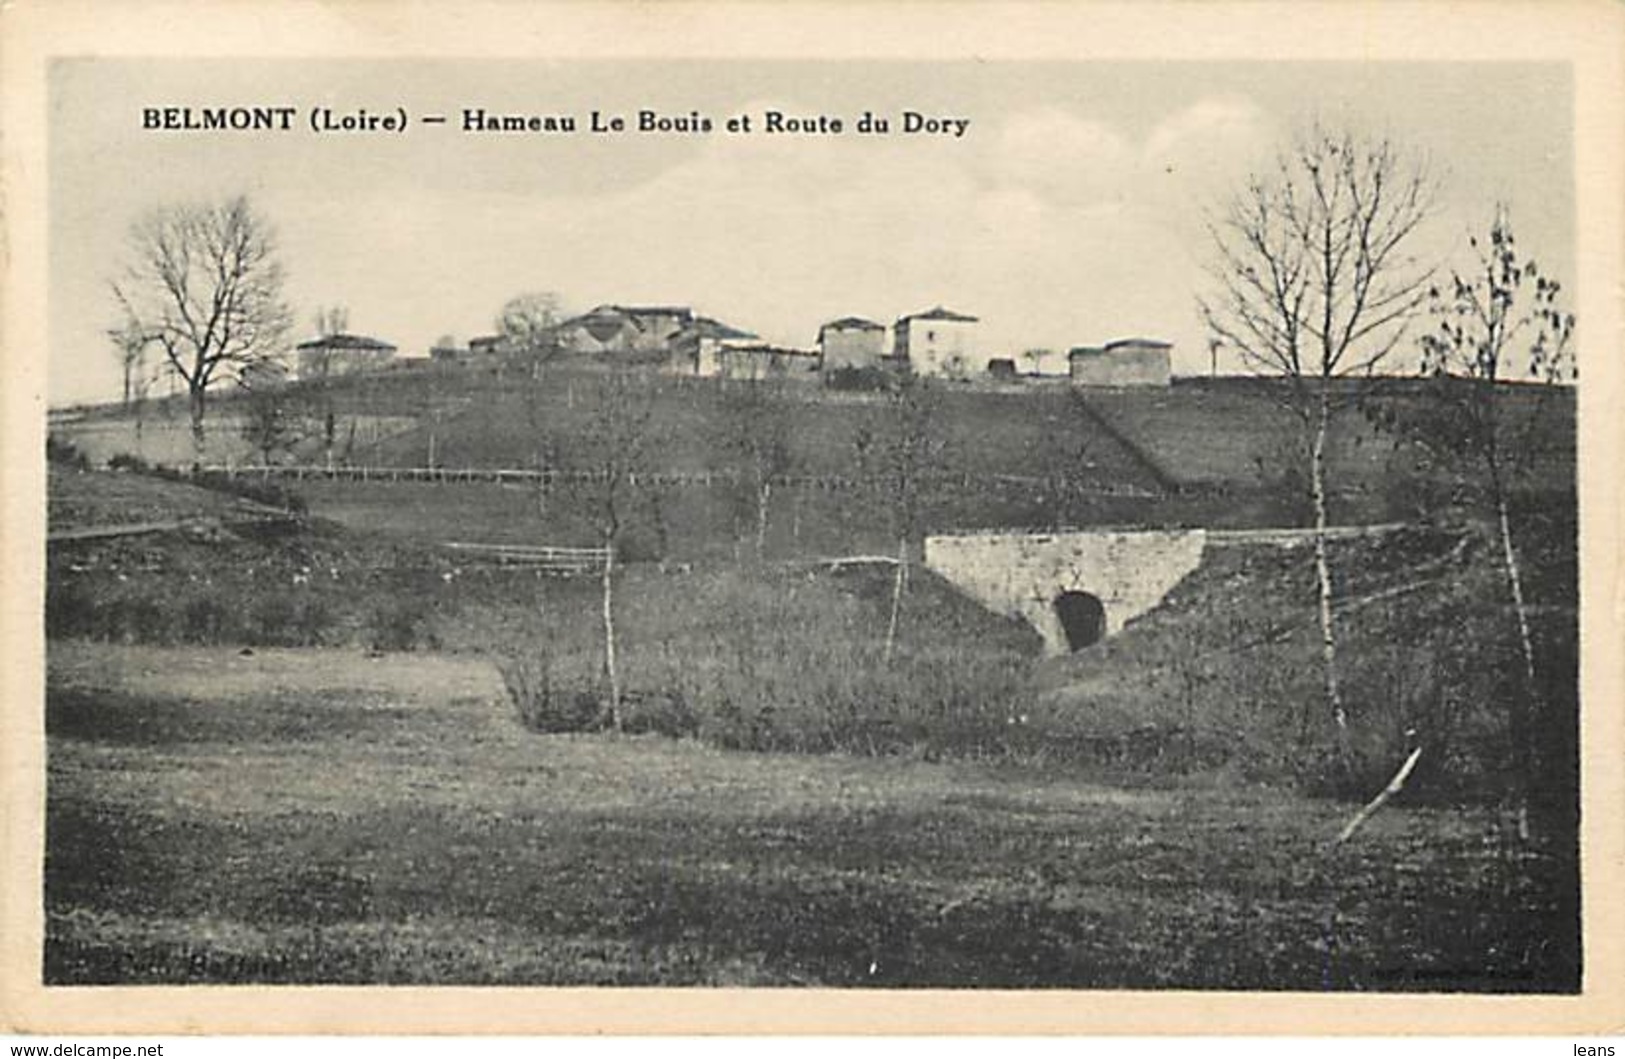 BELMONT - Hameau Le Bouis Et Route Du Dory - Belmont De La Loire